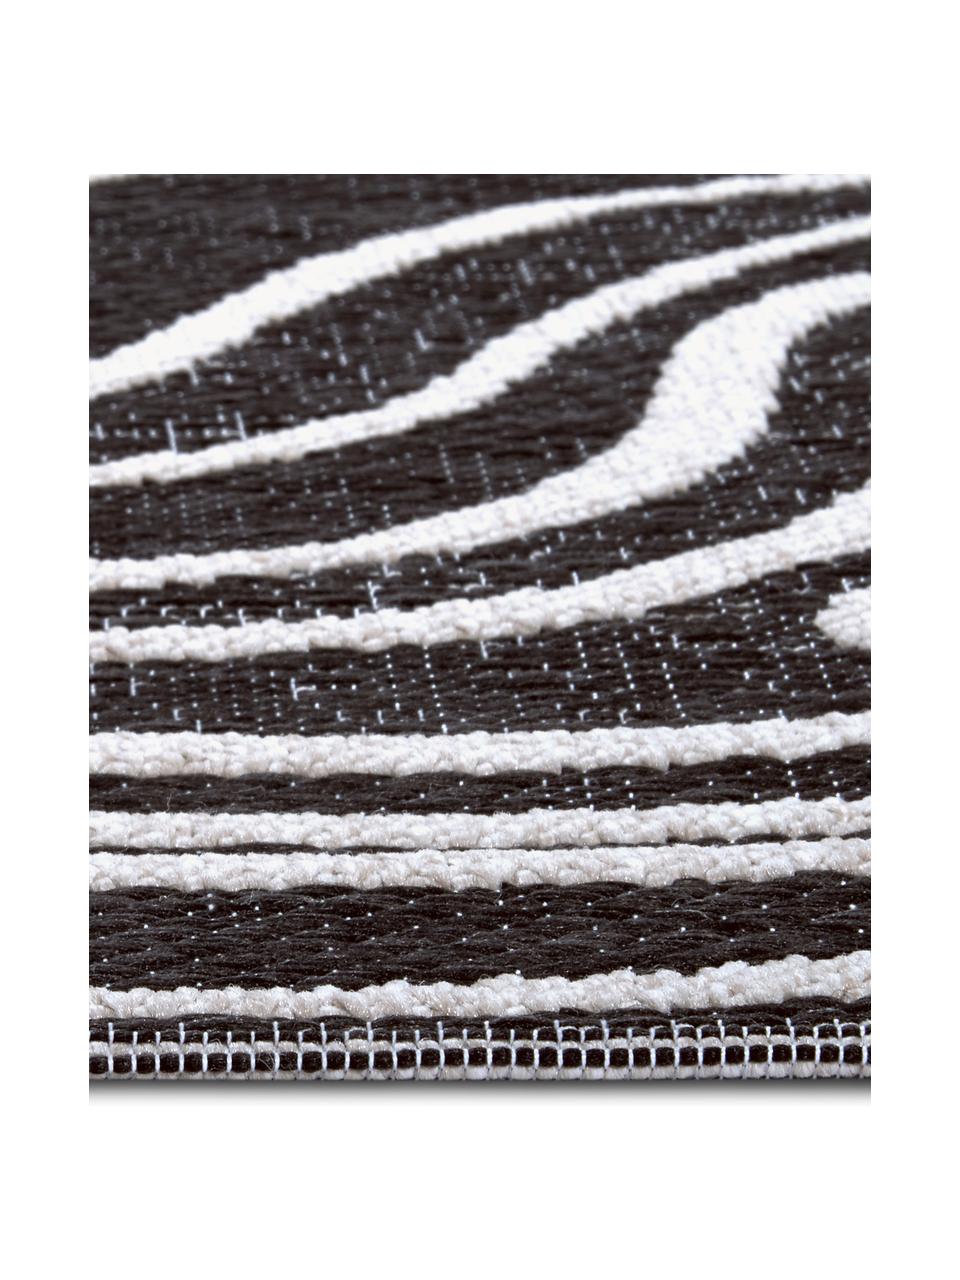 Interiérový/exteriérový koberec Calé, 100 % polypropylen

Materiál použitý v tomto produktu byl testován na škodlivé látky a certifikován podle STANDARD 100 od OEKO-TEX® 1002004, OEKO-TEX Service GmbH., Černá, bílá, Š 80 cm, D 150 cm (velikost XS)